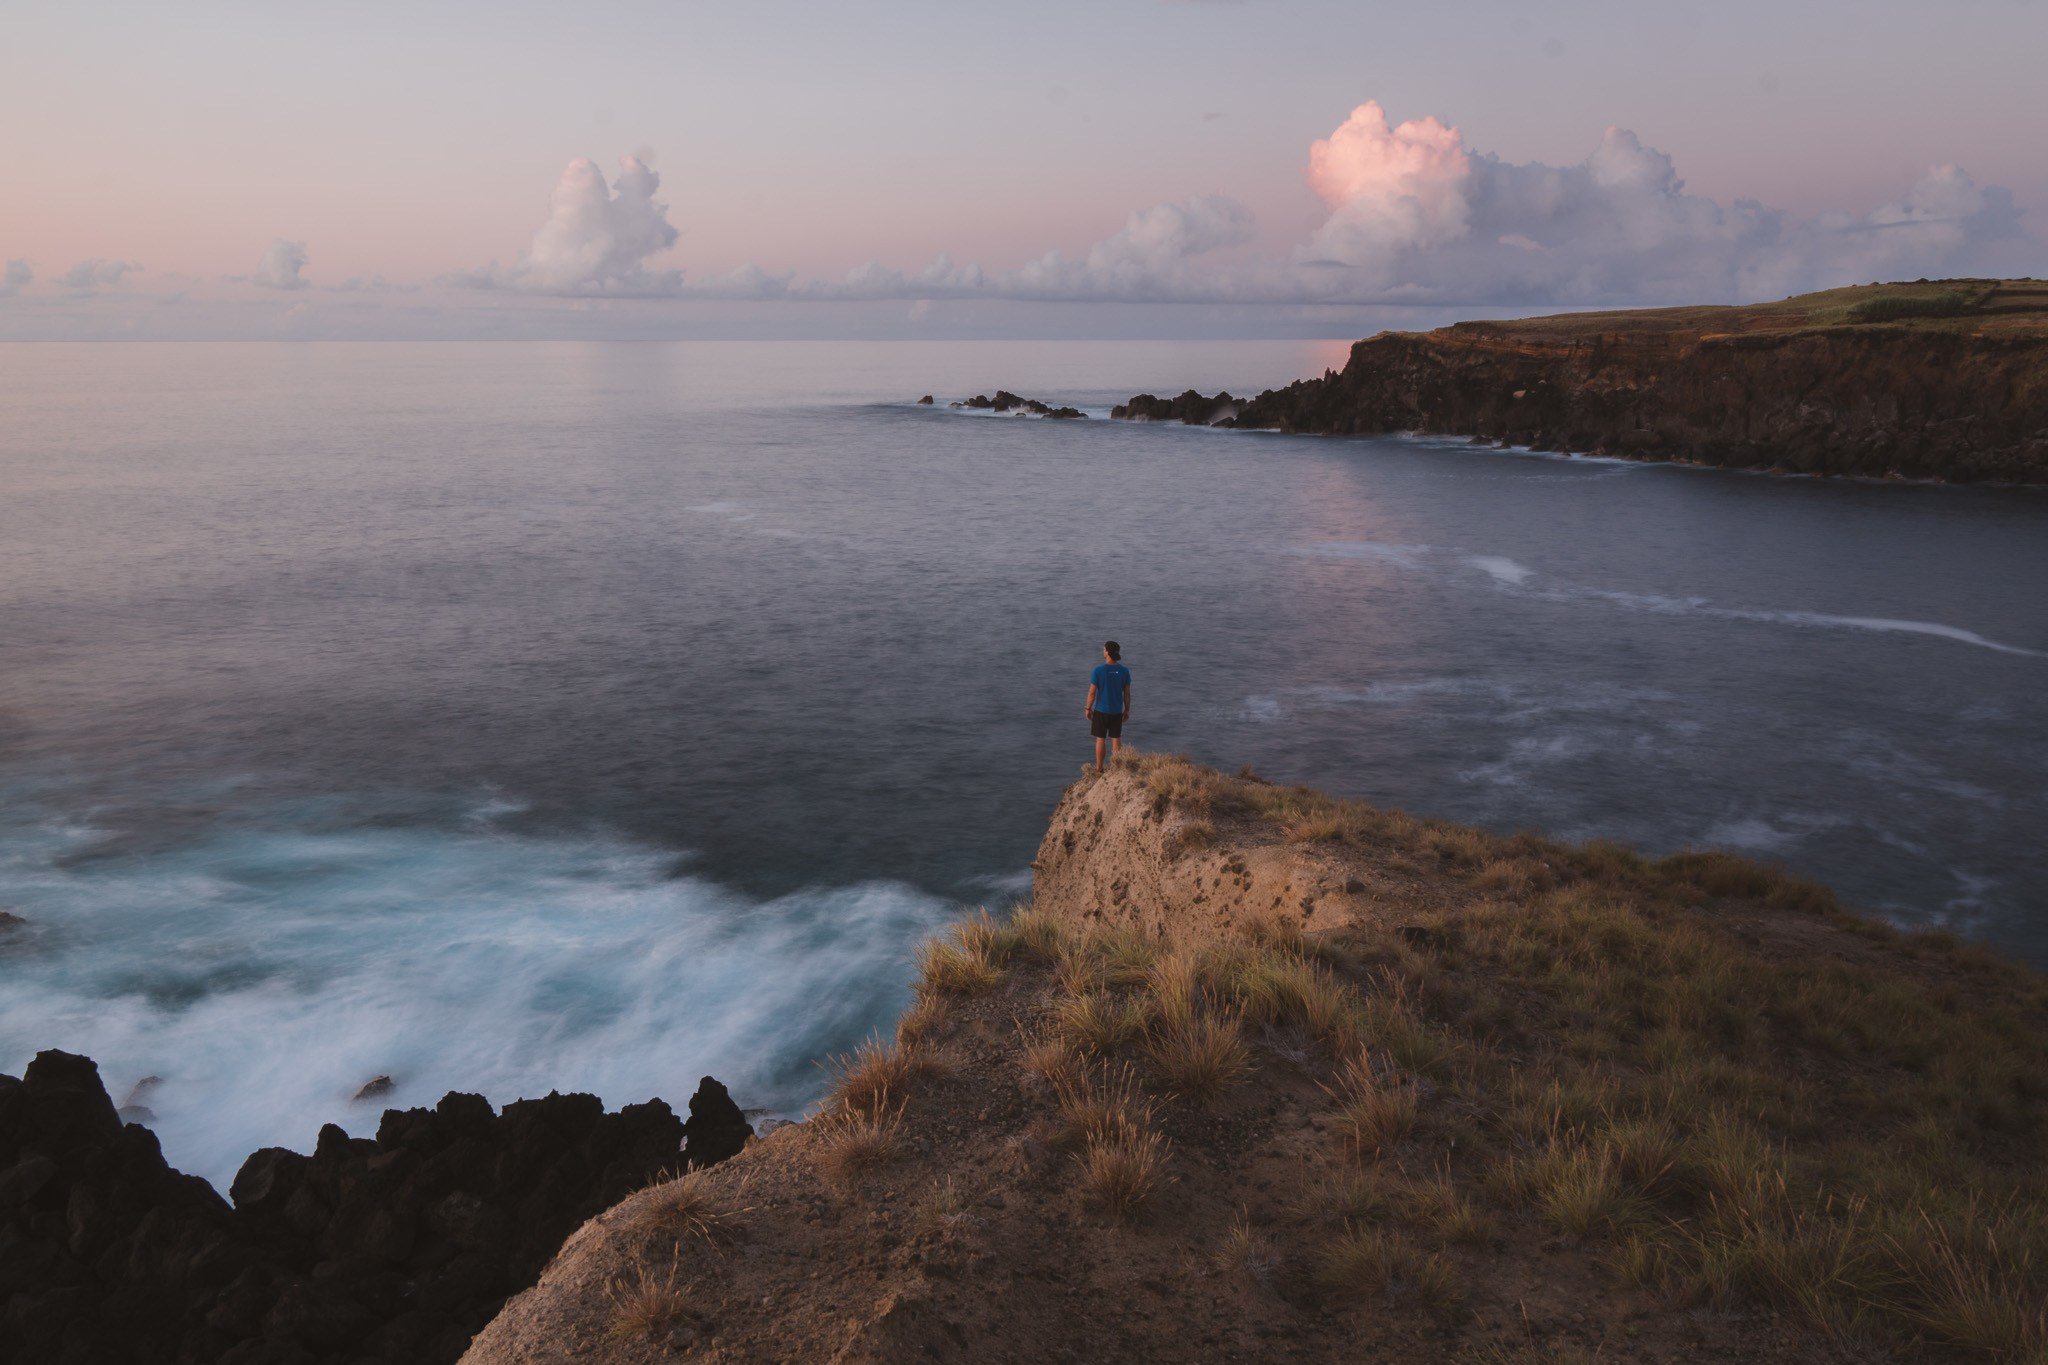 Sonnenuntergang beim Reisen zu den Azoren